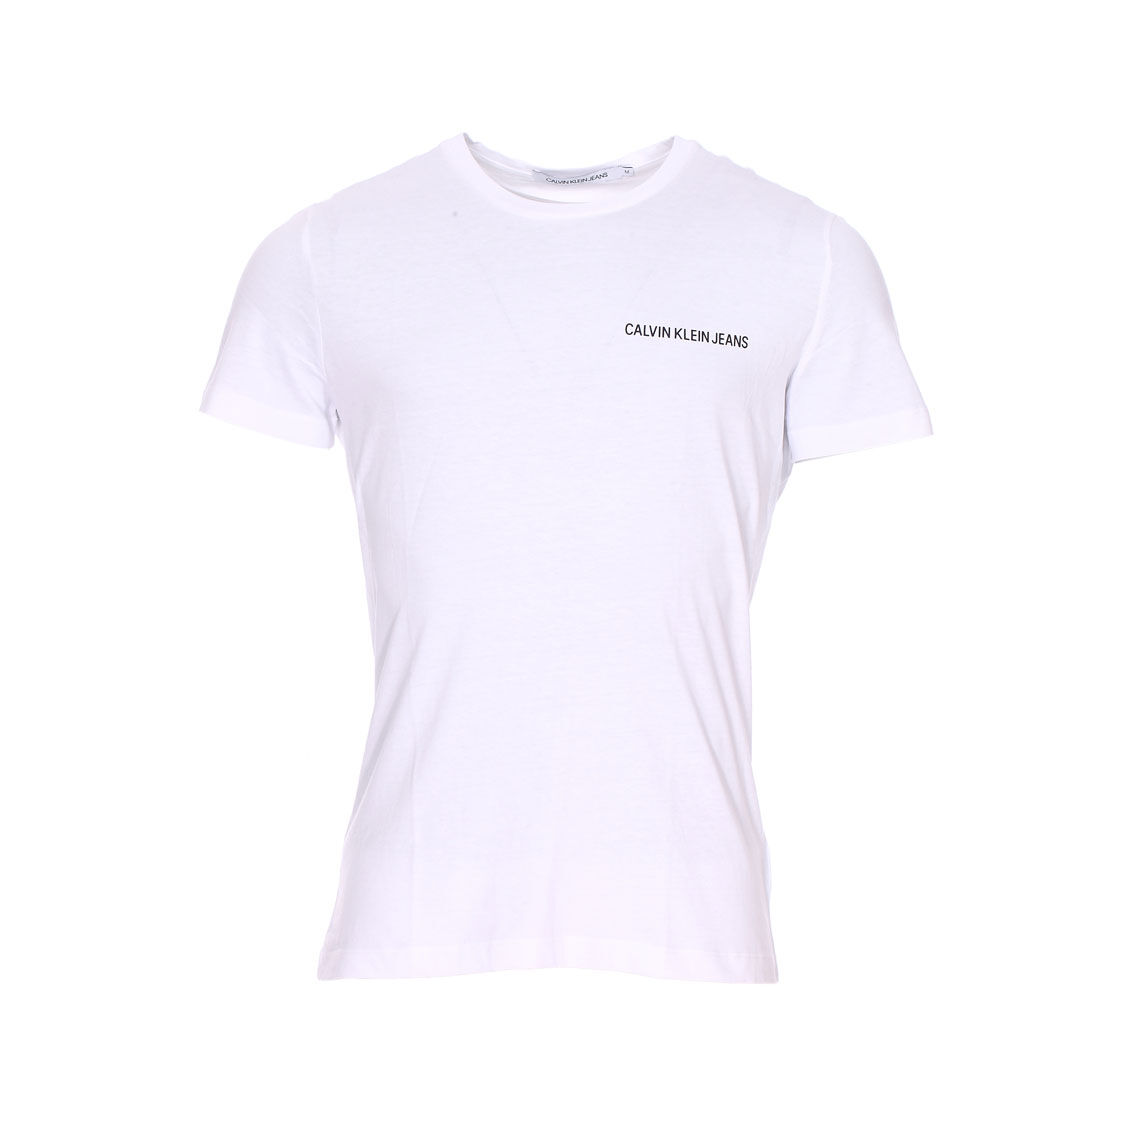 Calvin Klein Jeans Tee-shirt col rond Calvin Klein Jeans Chest Institutional en coton blanc floqué en noir - BLANC - L